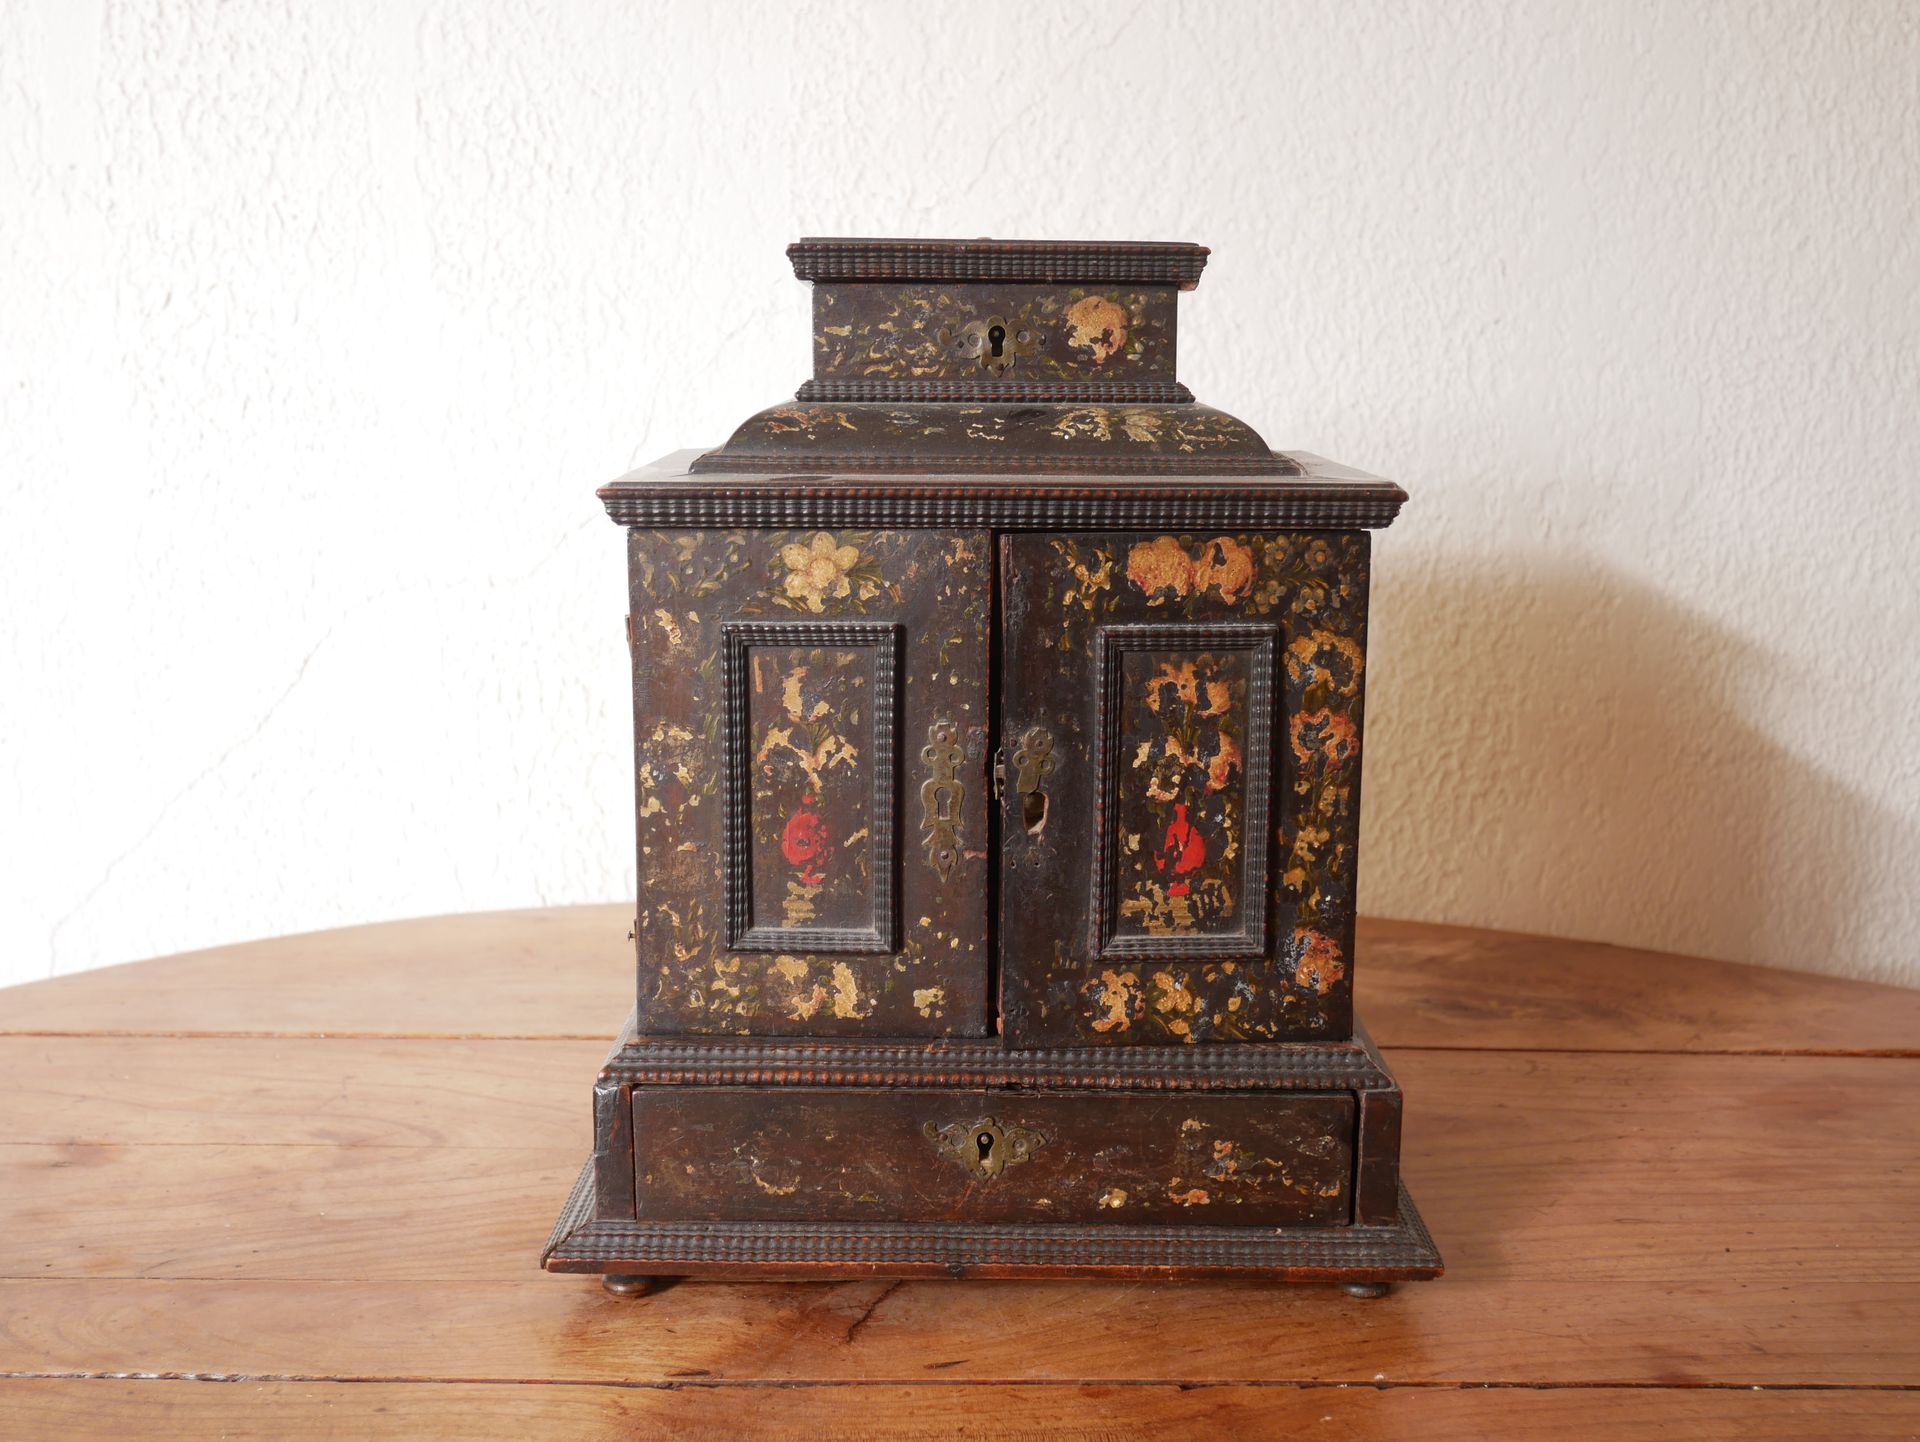 Null 一个发黑的木质四角柜，上面绘有花卉、人物和风景的装饰，具有十七世纪的风格。

高：31、宽：25、深：16厘米（磨损、部件缺失、意外）。